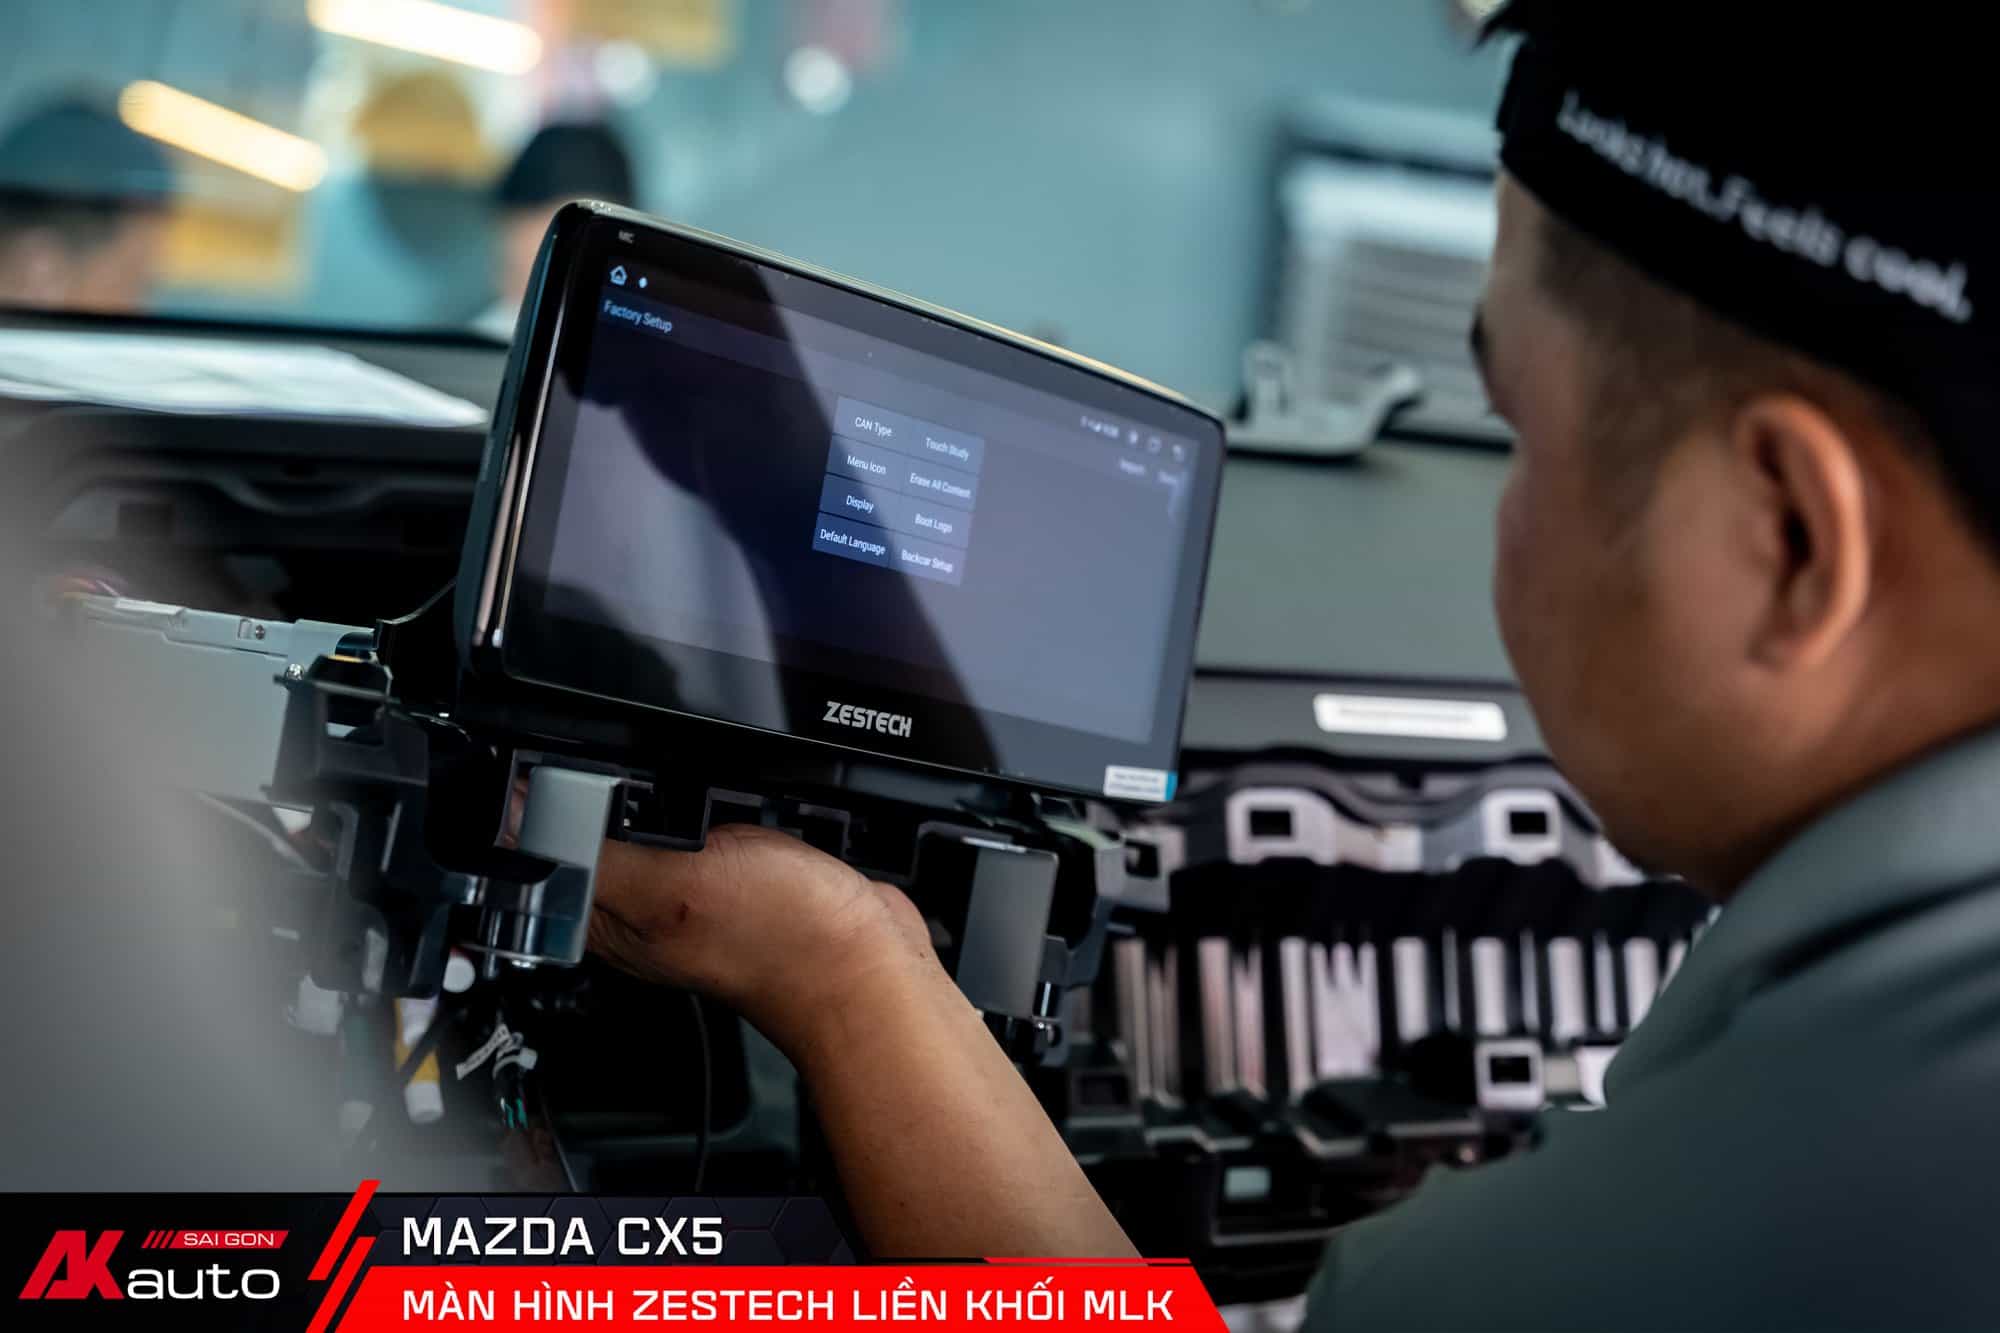 Lắp màn hình nguyên cụm Mazda tại AKauto